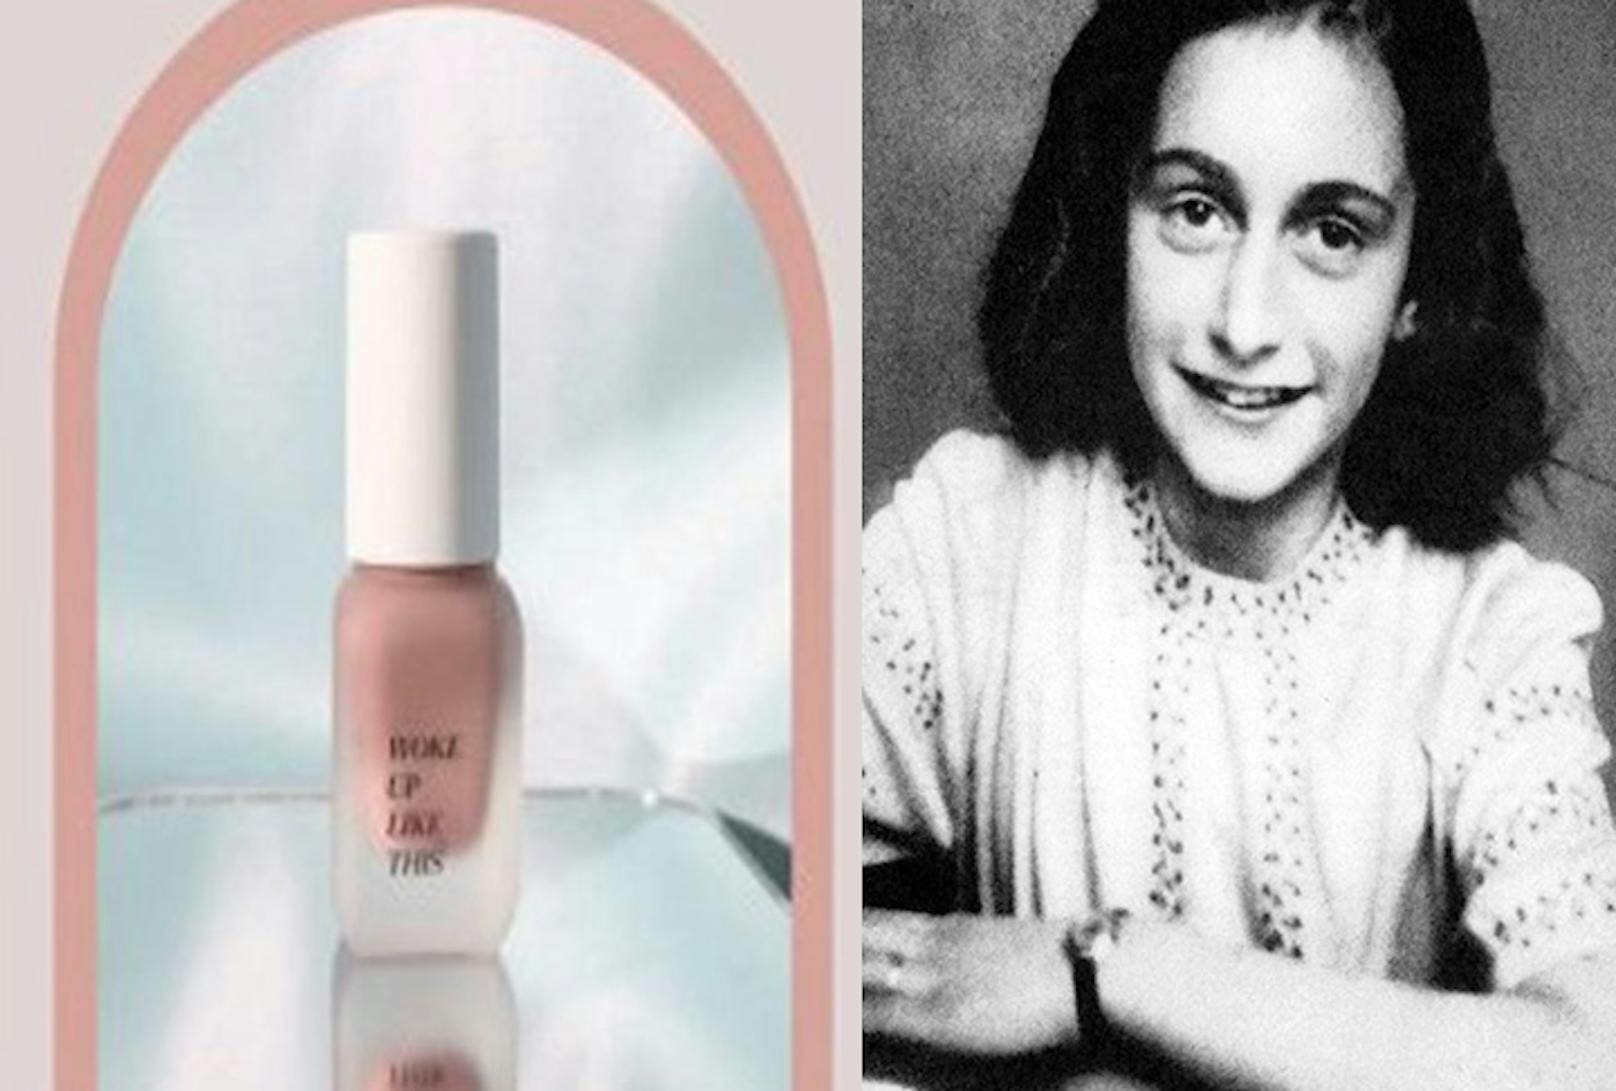 Das "Anne Frank Blush" einer Kosmetikmarke aus Hongkong steht stark in der Kritik.